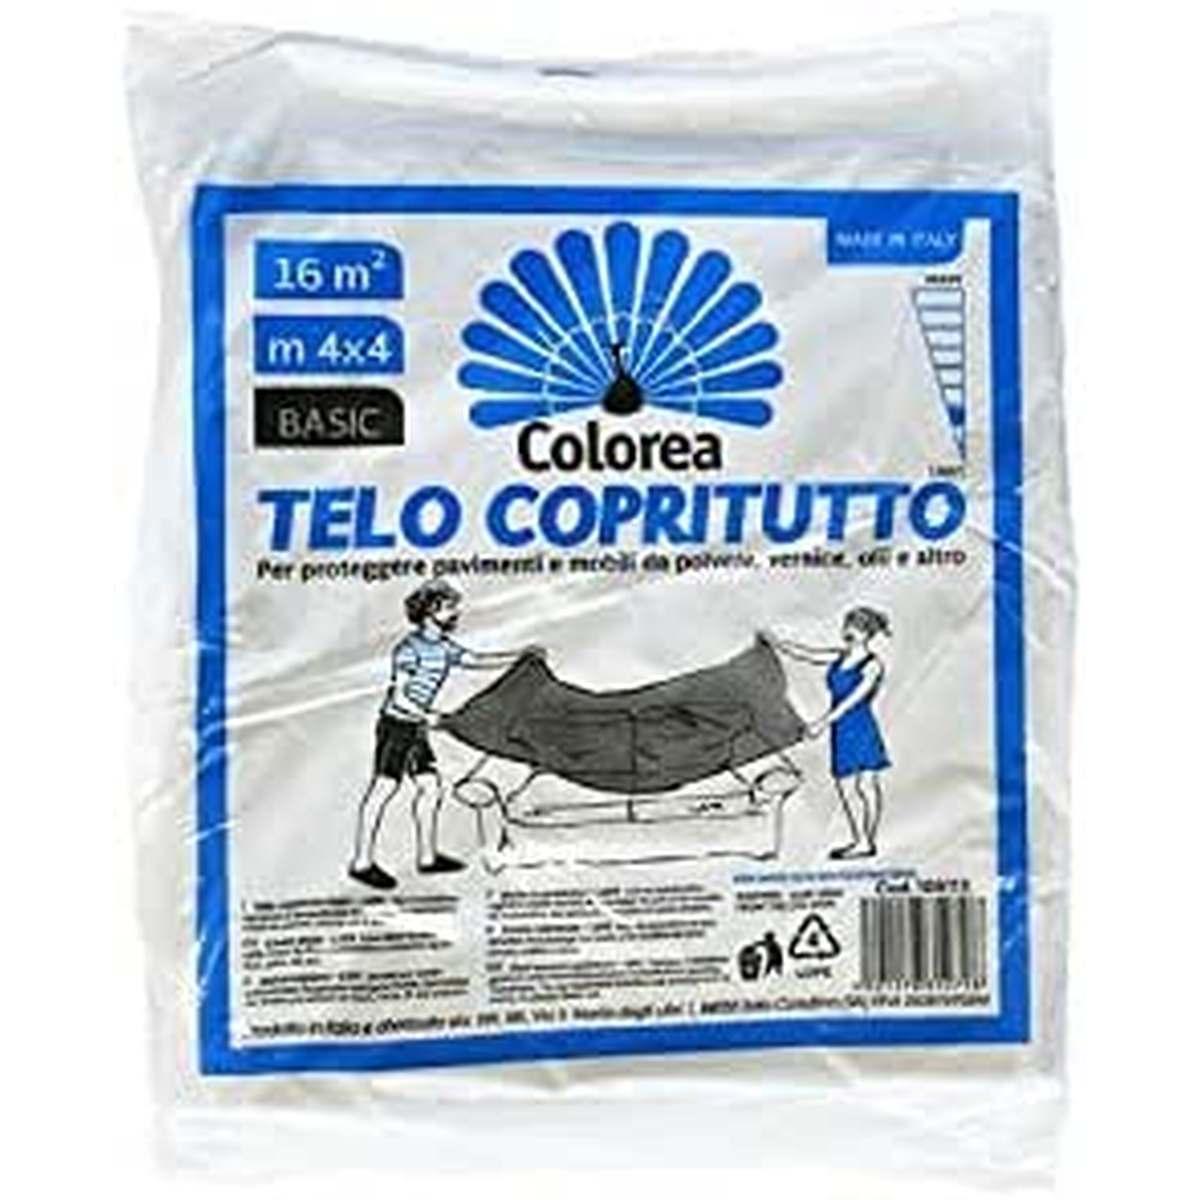 Colorea Telo copritutto mt.4x4 in polietilene gr.200 basic 2010220000214  9501278352798